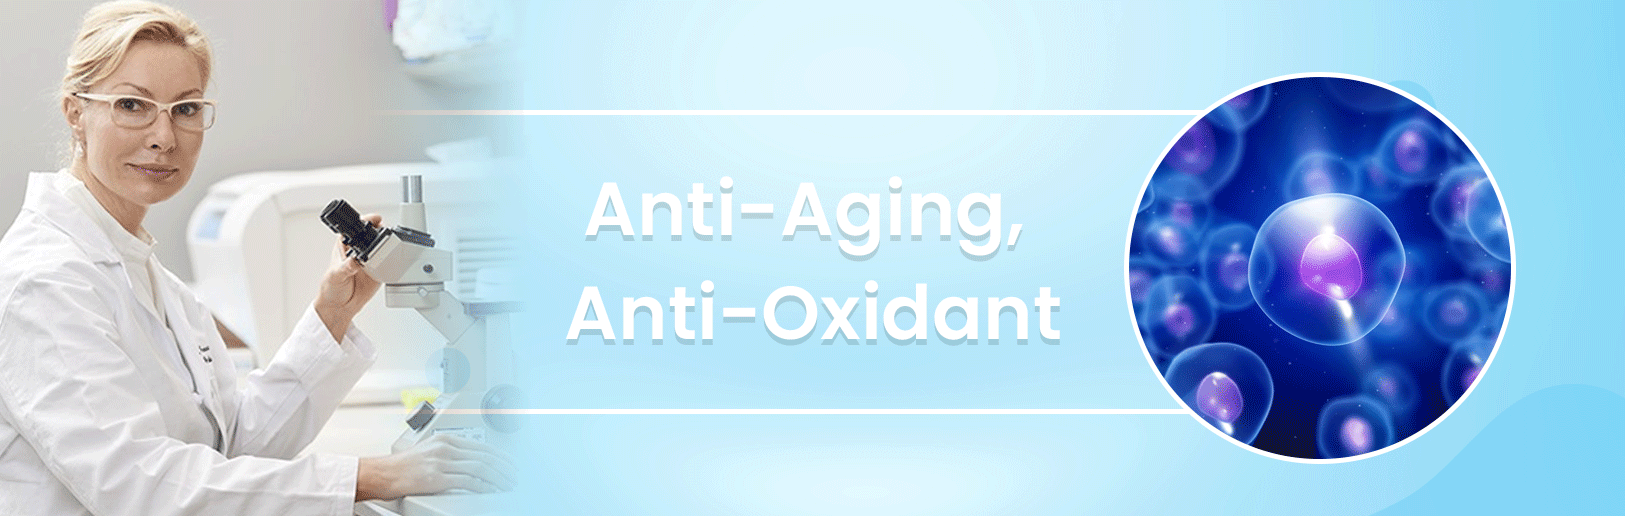 Anti-Aging, Anti-Oxidant